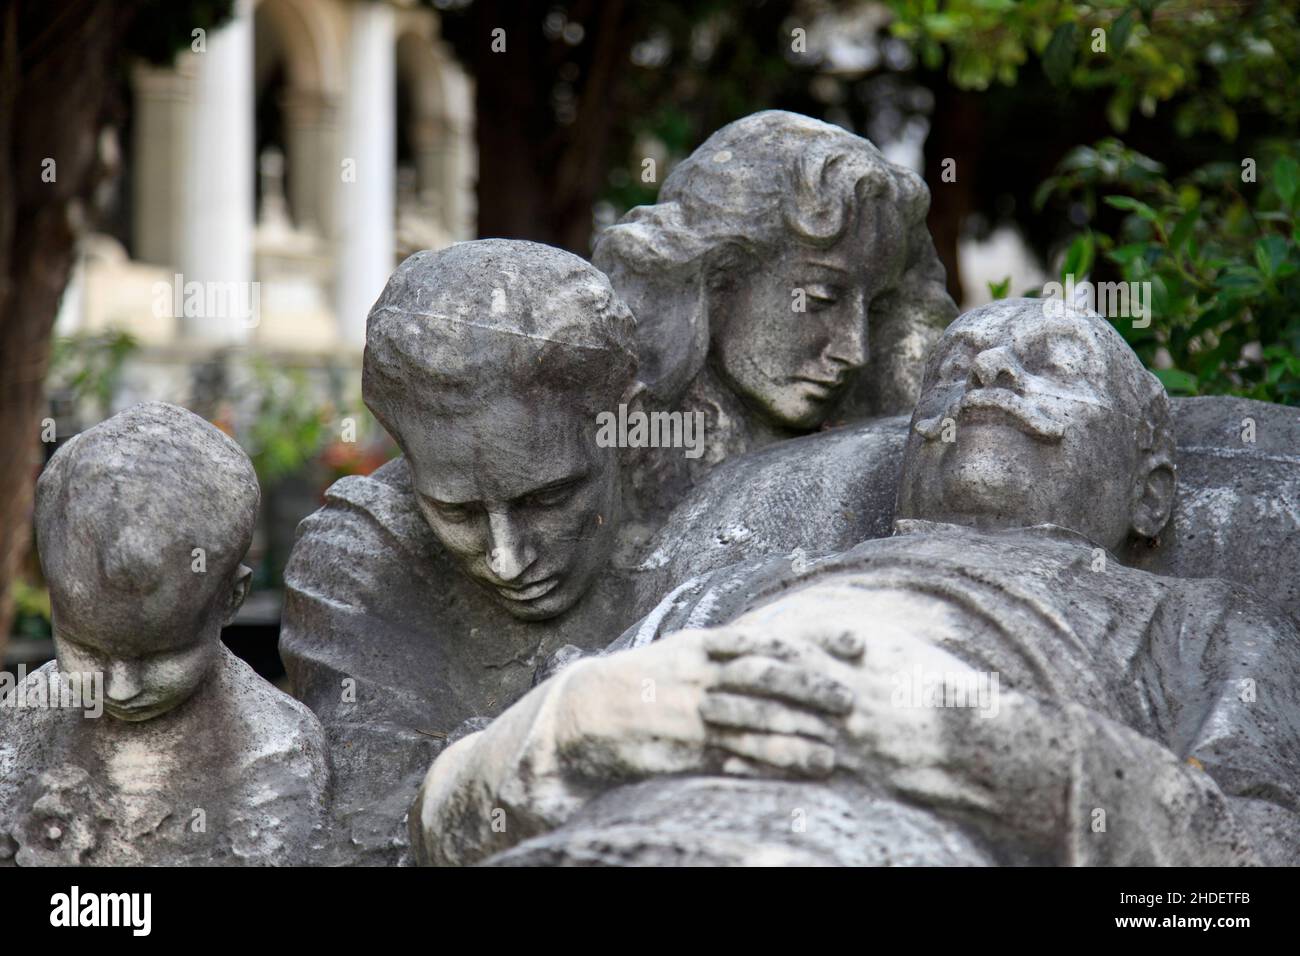 Monumental Cemetery of Staglieno (Cimitero monumentale di Staglieno), Genoa, Italy Stock Photo